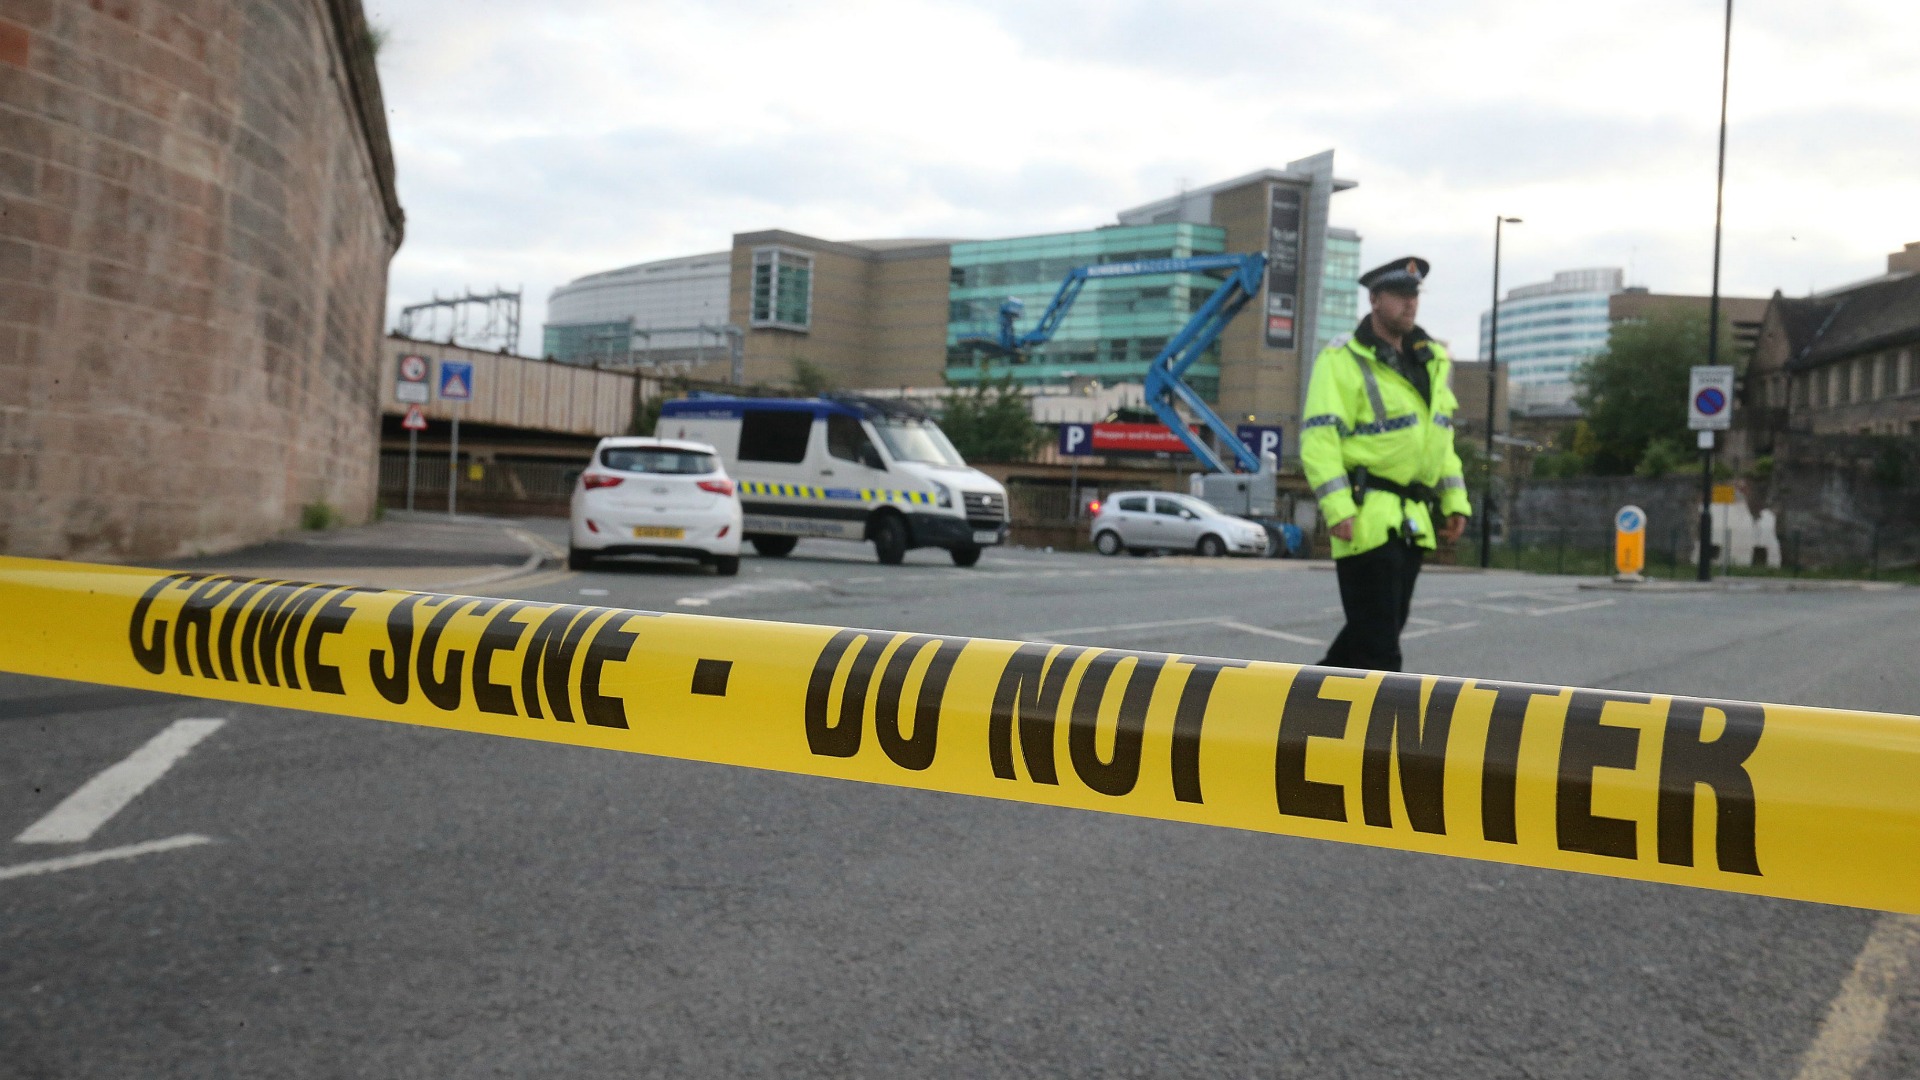 Condena unánime de la comunidad internacional por el atentado en Manchester